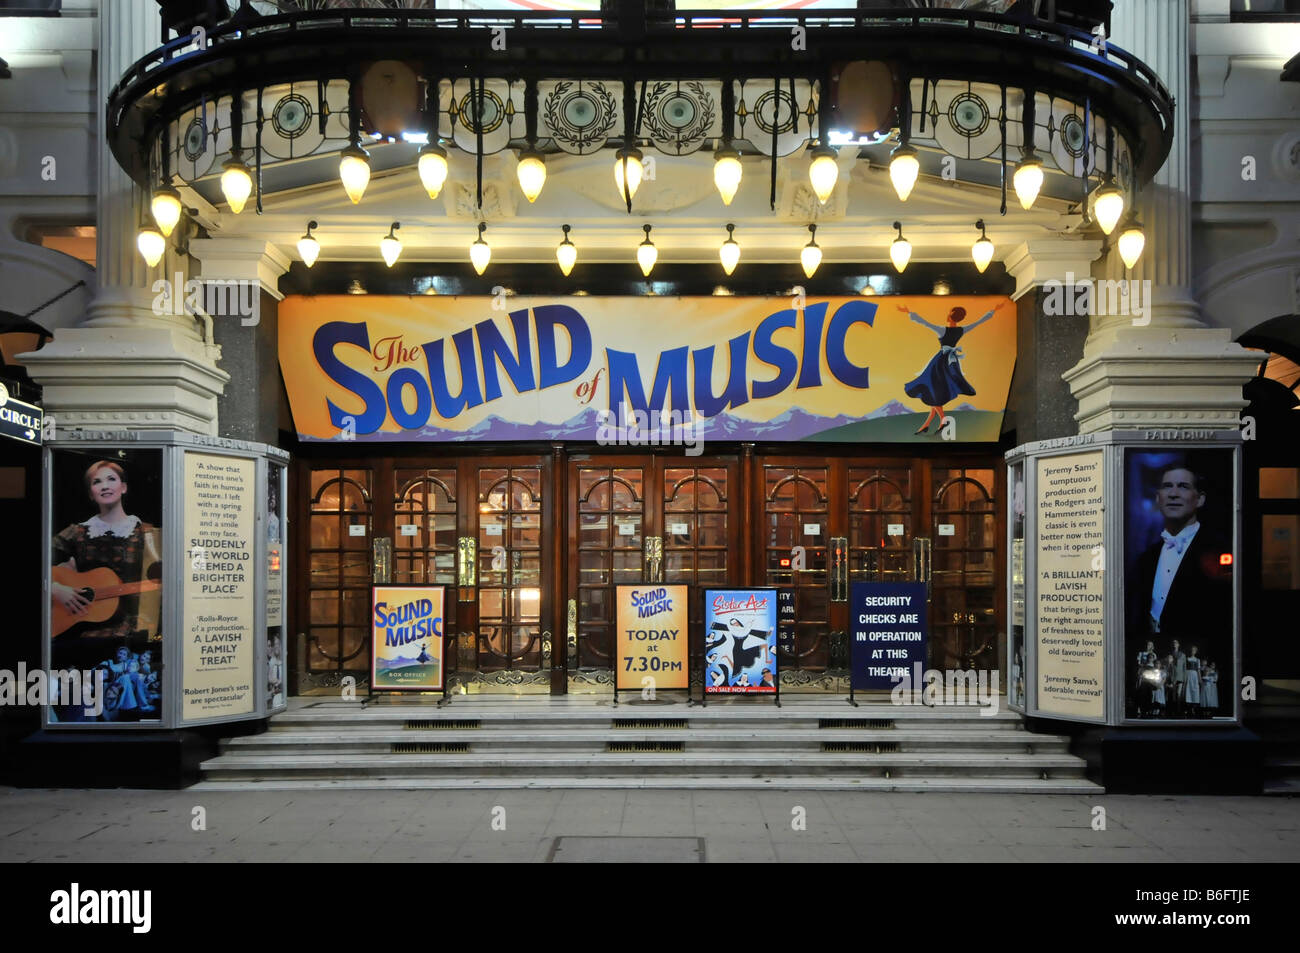 Sound of Music Bühnenvorstellung Produktionsschild Abend im historischen Palladium Theatre Haupteingang in Argyll Street Soho West End London England Großbritannien Stockfoto